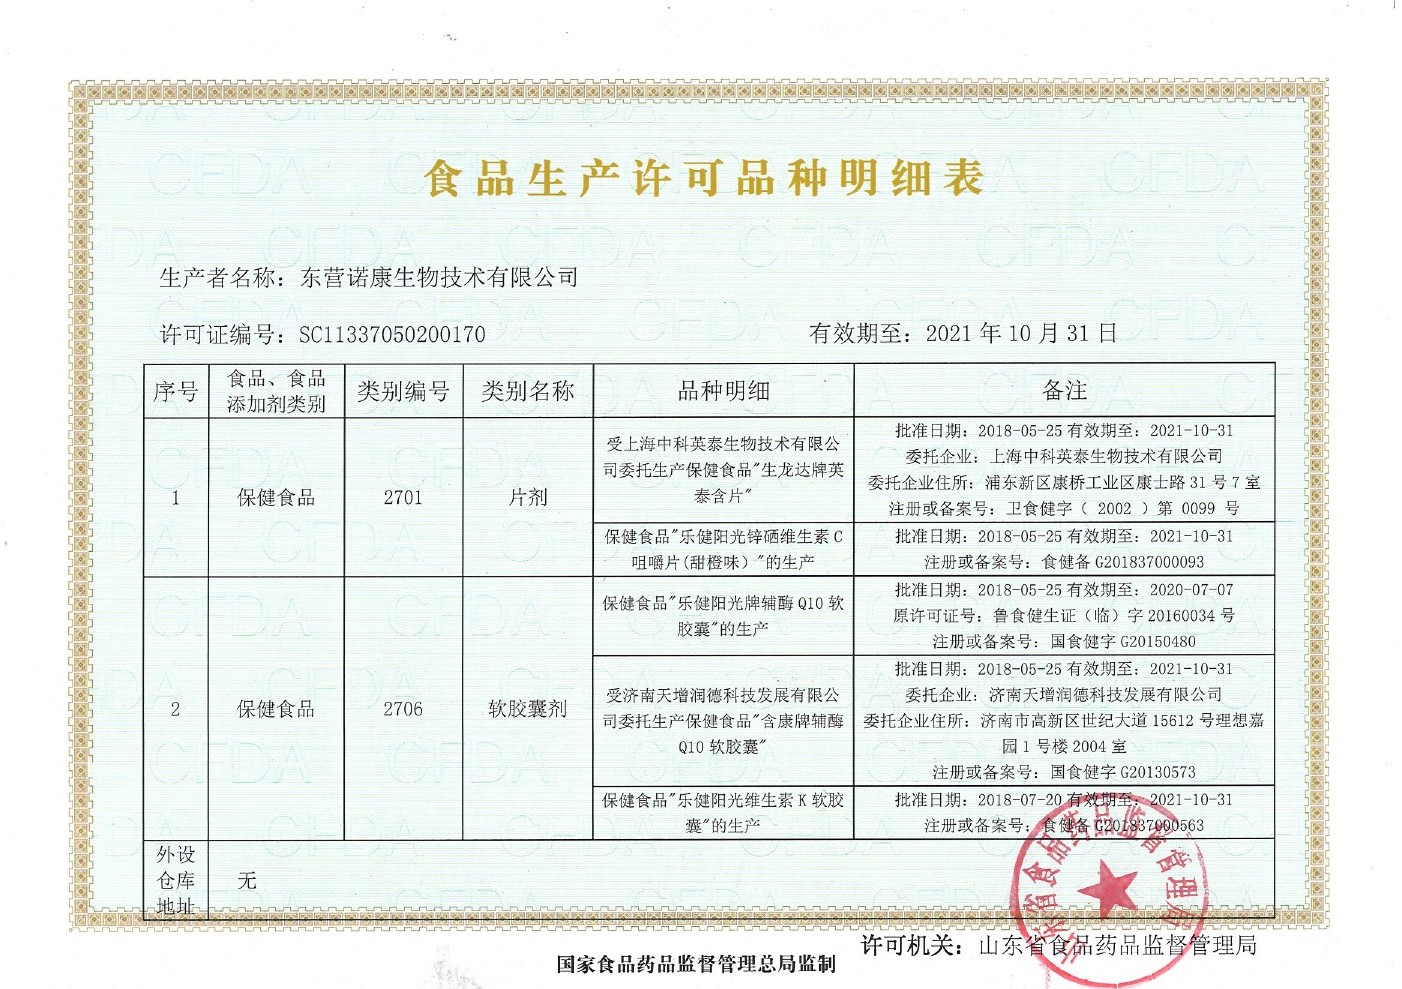 东营诺康生物技术有限公司保健食品生产许可品种明细表2-1.jpg